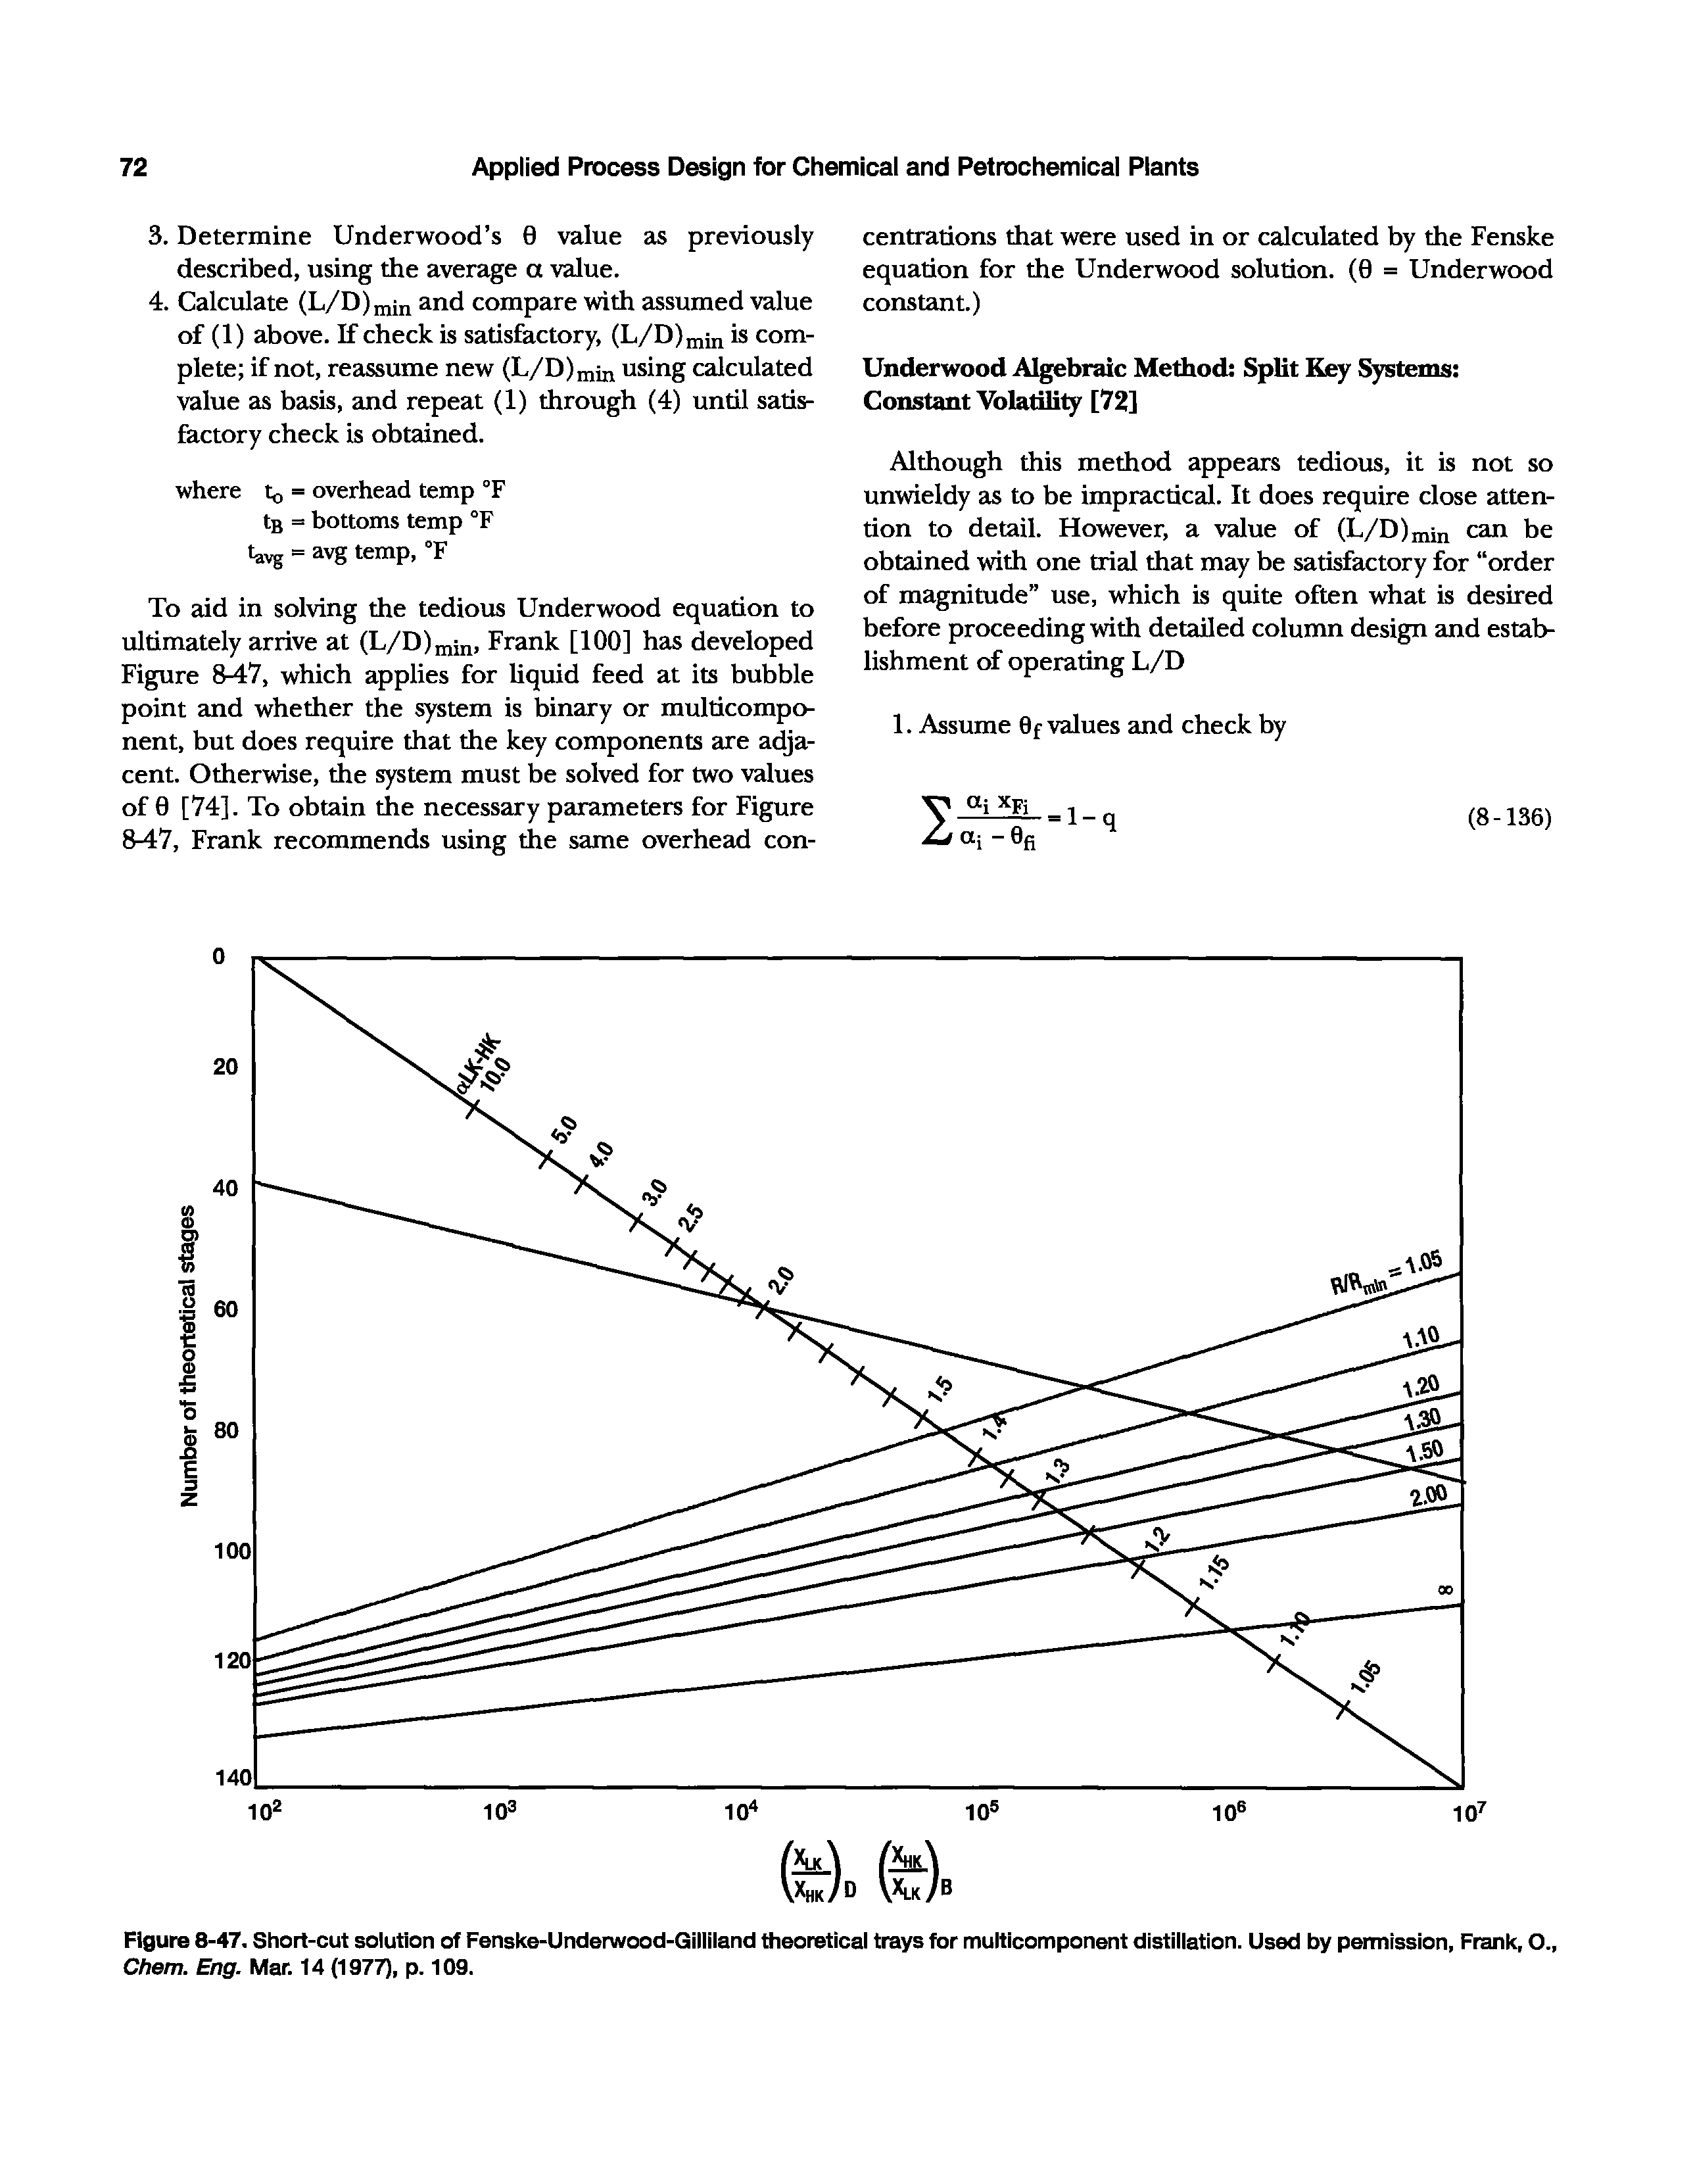 Figure 8-47. Short-cut solution of Fenske-Underwood-Gilliland theoretical trays for multicomponent distillation. Used by permission, Frank, O., Chem. Eng. Mar. 14 (1977), p. 109.